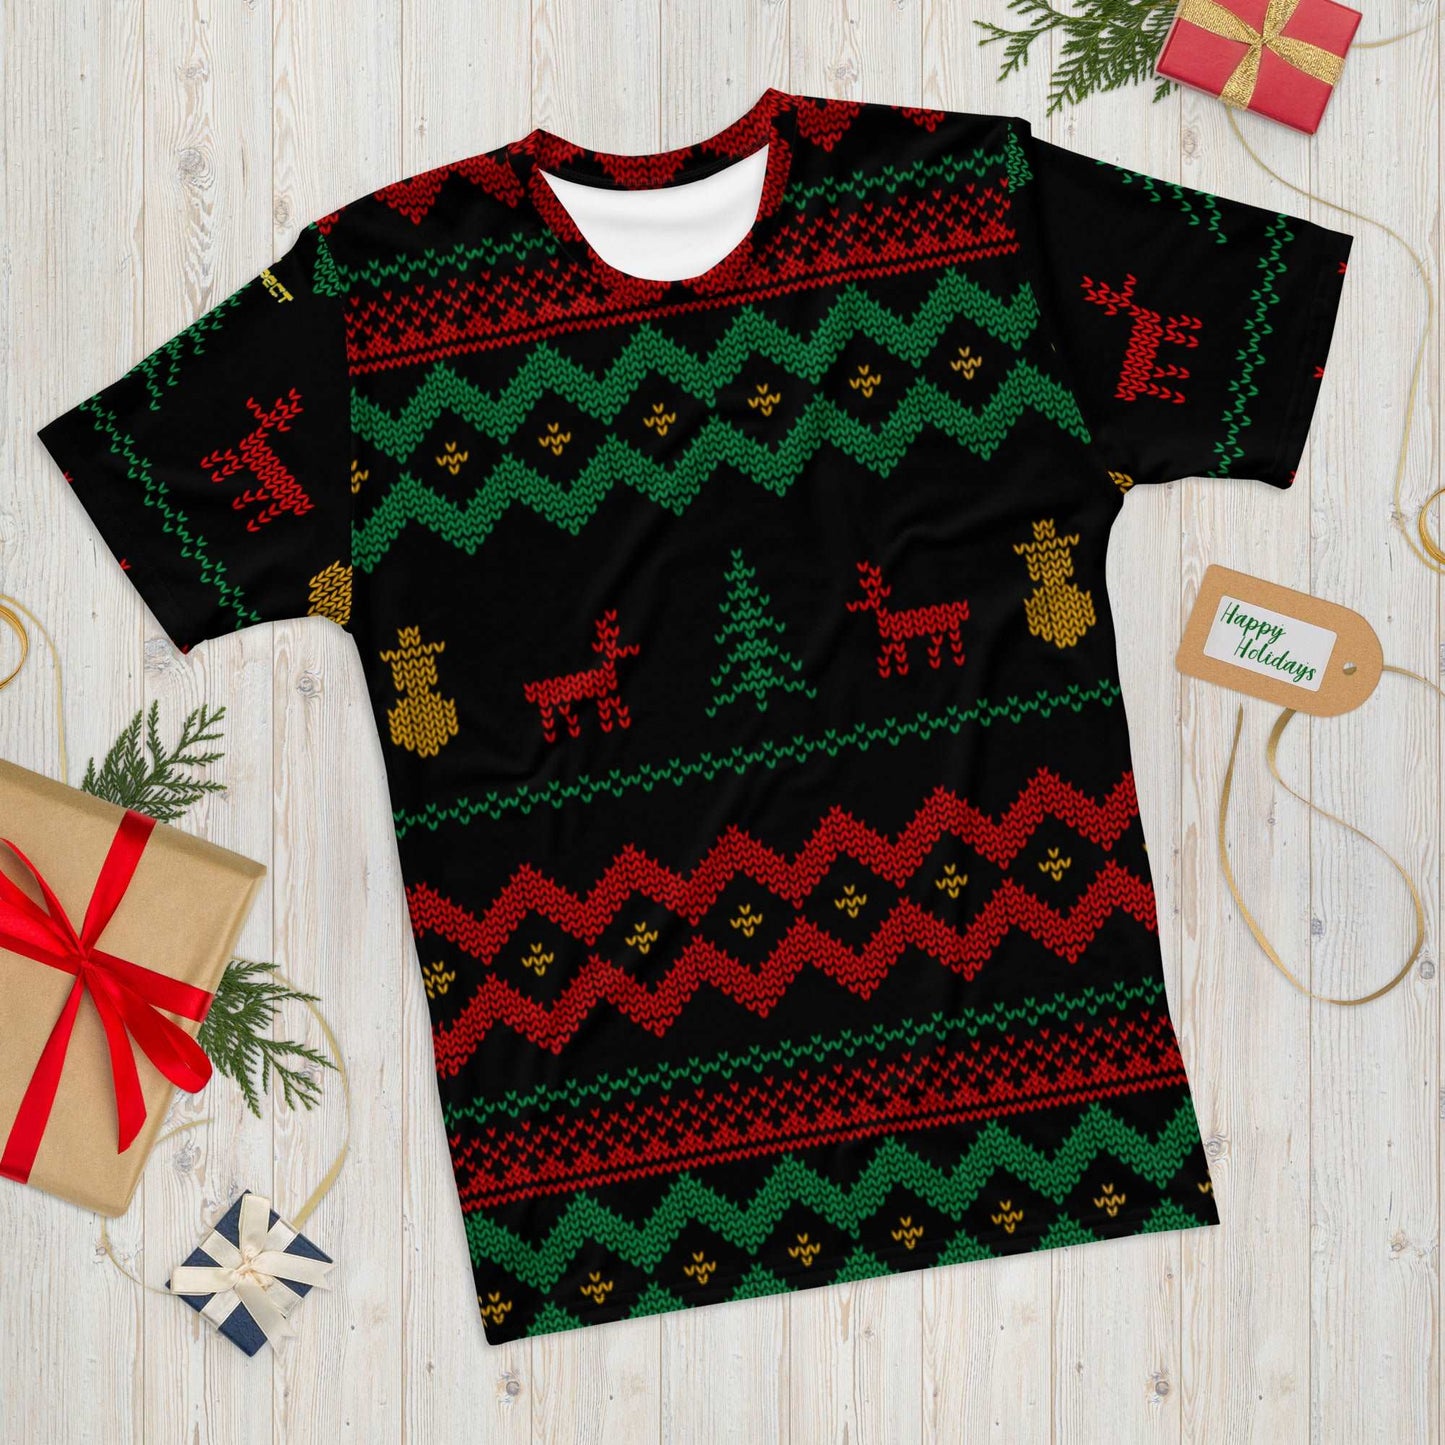 Christmas Merry Sweater Men's T-shirt TeeSpect